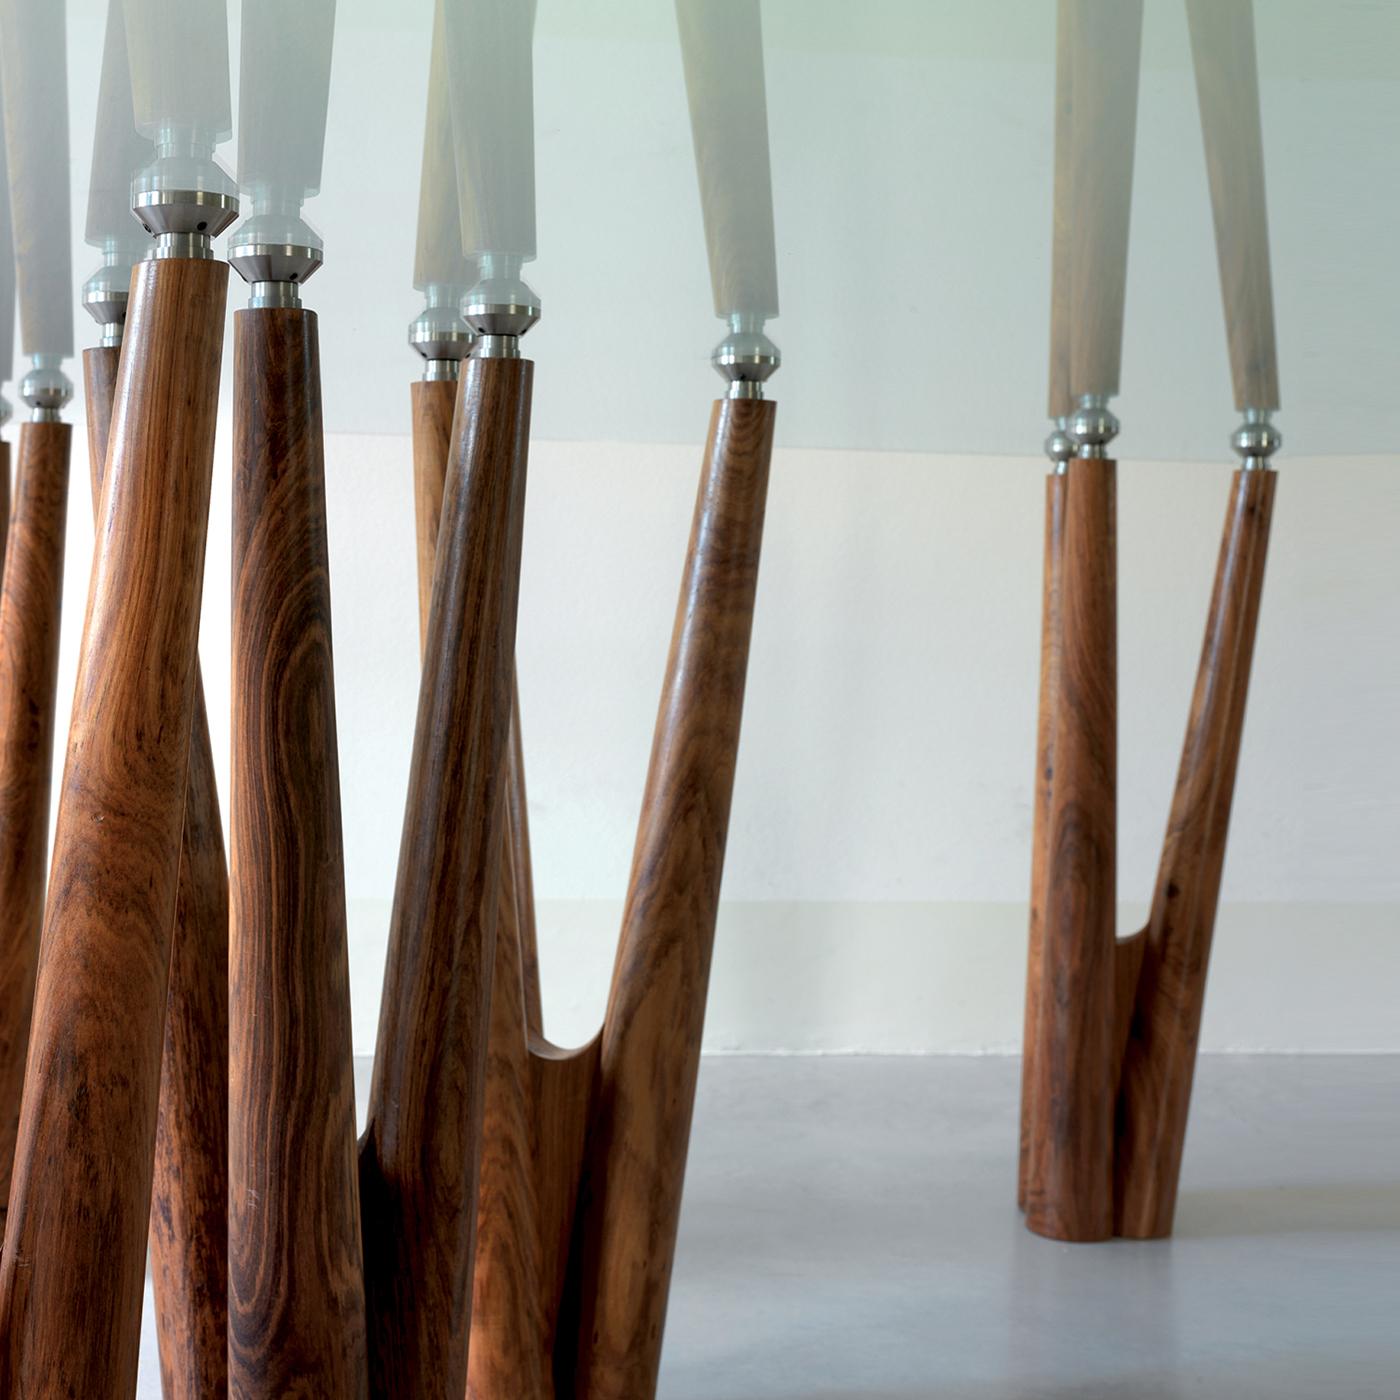 La table Gaudi est un hommage au grand maître. Dans chaque base, les pièces appartiennent au même arbre, de sorte que les grains et les couleurs continuent à jouer et à donner un feuillage tout à fait artificiel. Les bases en palissandre massif sont